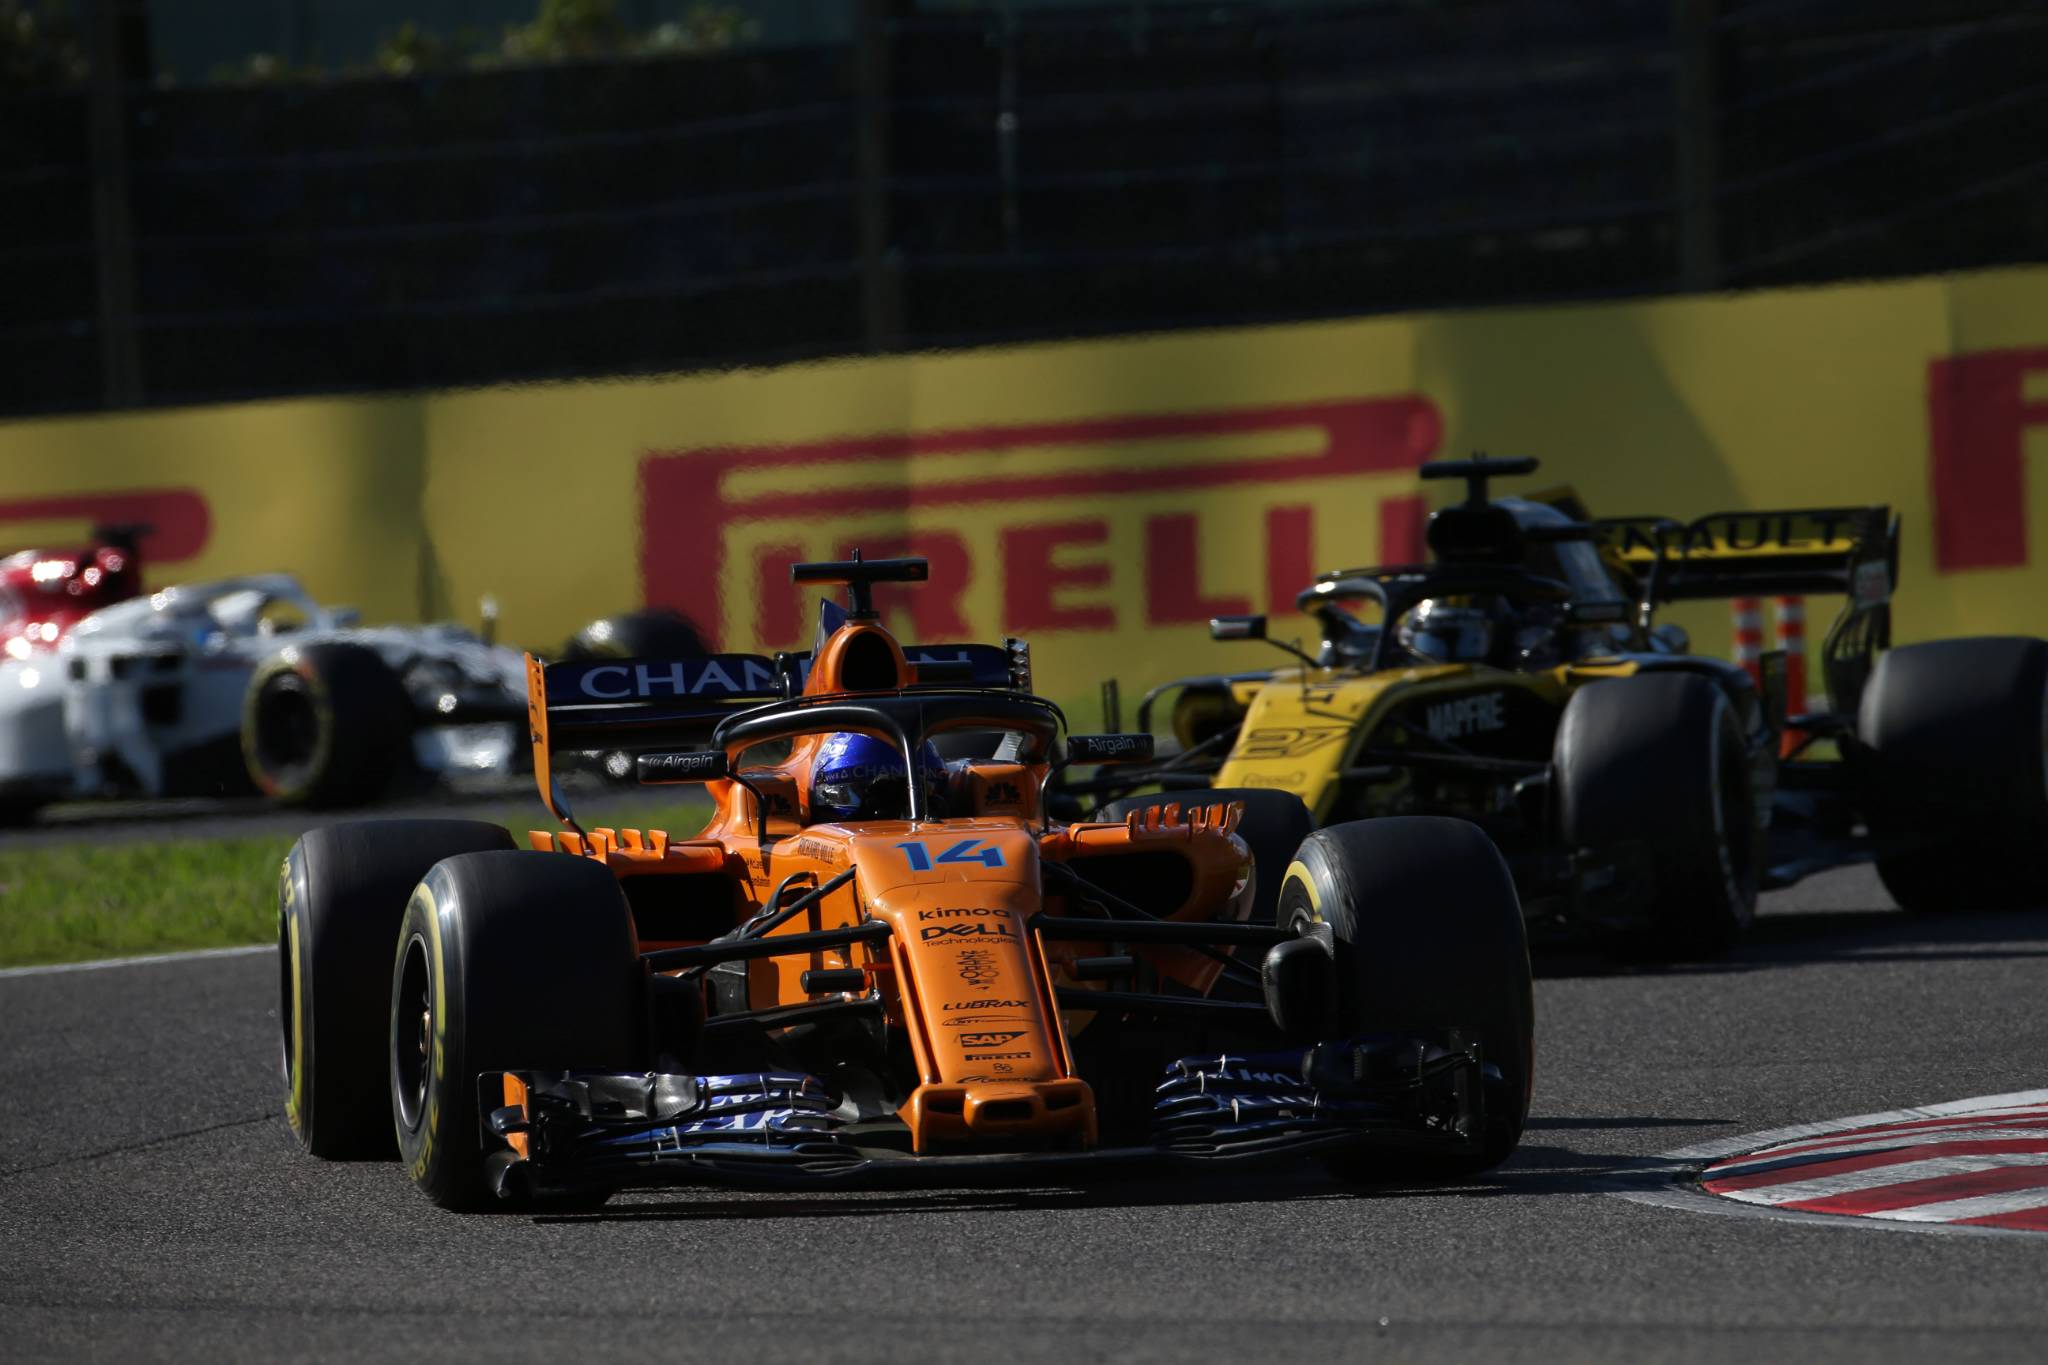 07.10.2018 - Race, Fernando Alonso (ESP) McLaren MCL33 